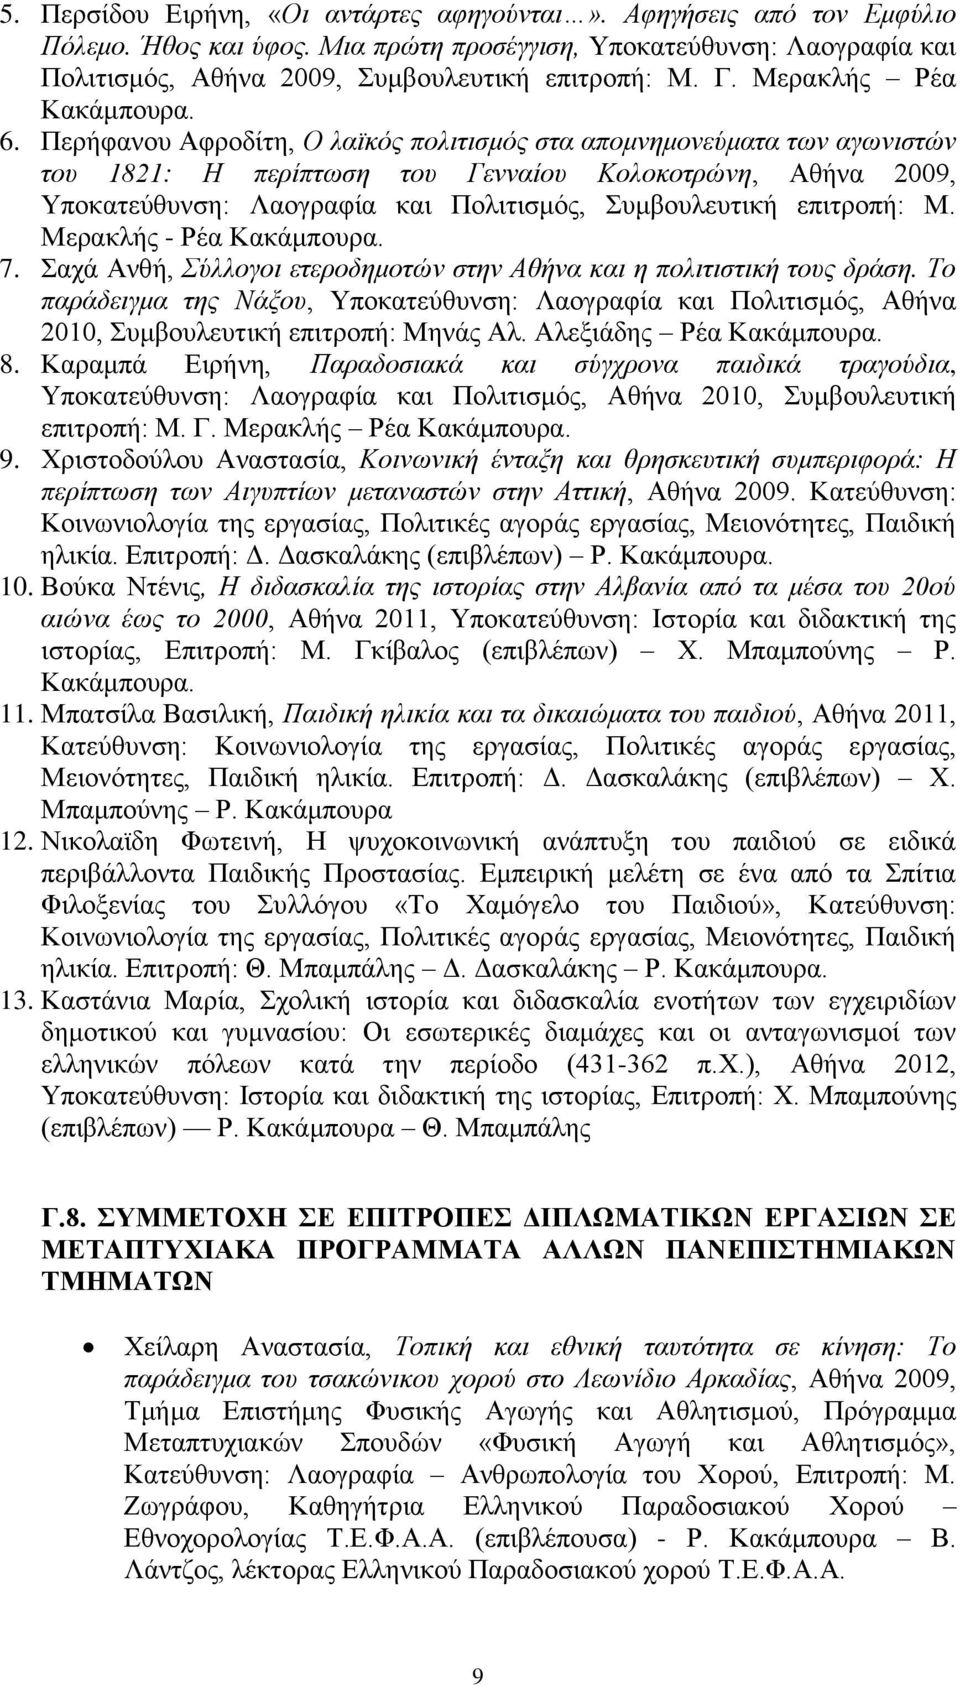 Περήφανου Αφροδίτη, Ο λαϊκός πολιτισμός στα απομνημονεύματα των αγωνιστών του 1821: Η περίπτωση του Γενναίου Κολοκοτρώνη, Αθήνα 2009, Υποκατεύθυνση: Λαογραφία και Πολιτισμός, Συμβουλευτική επιτροπή: